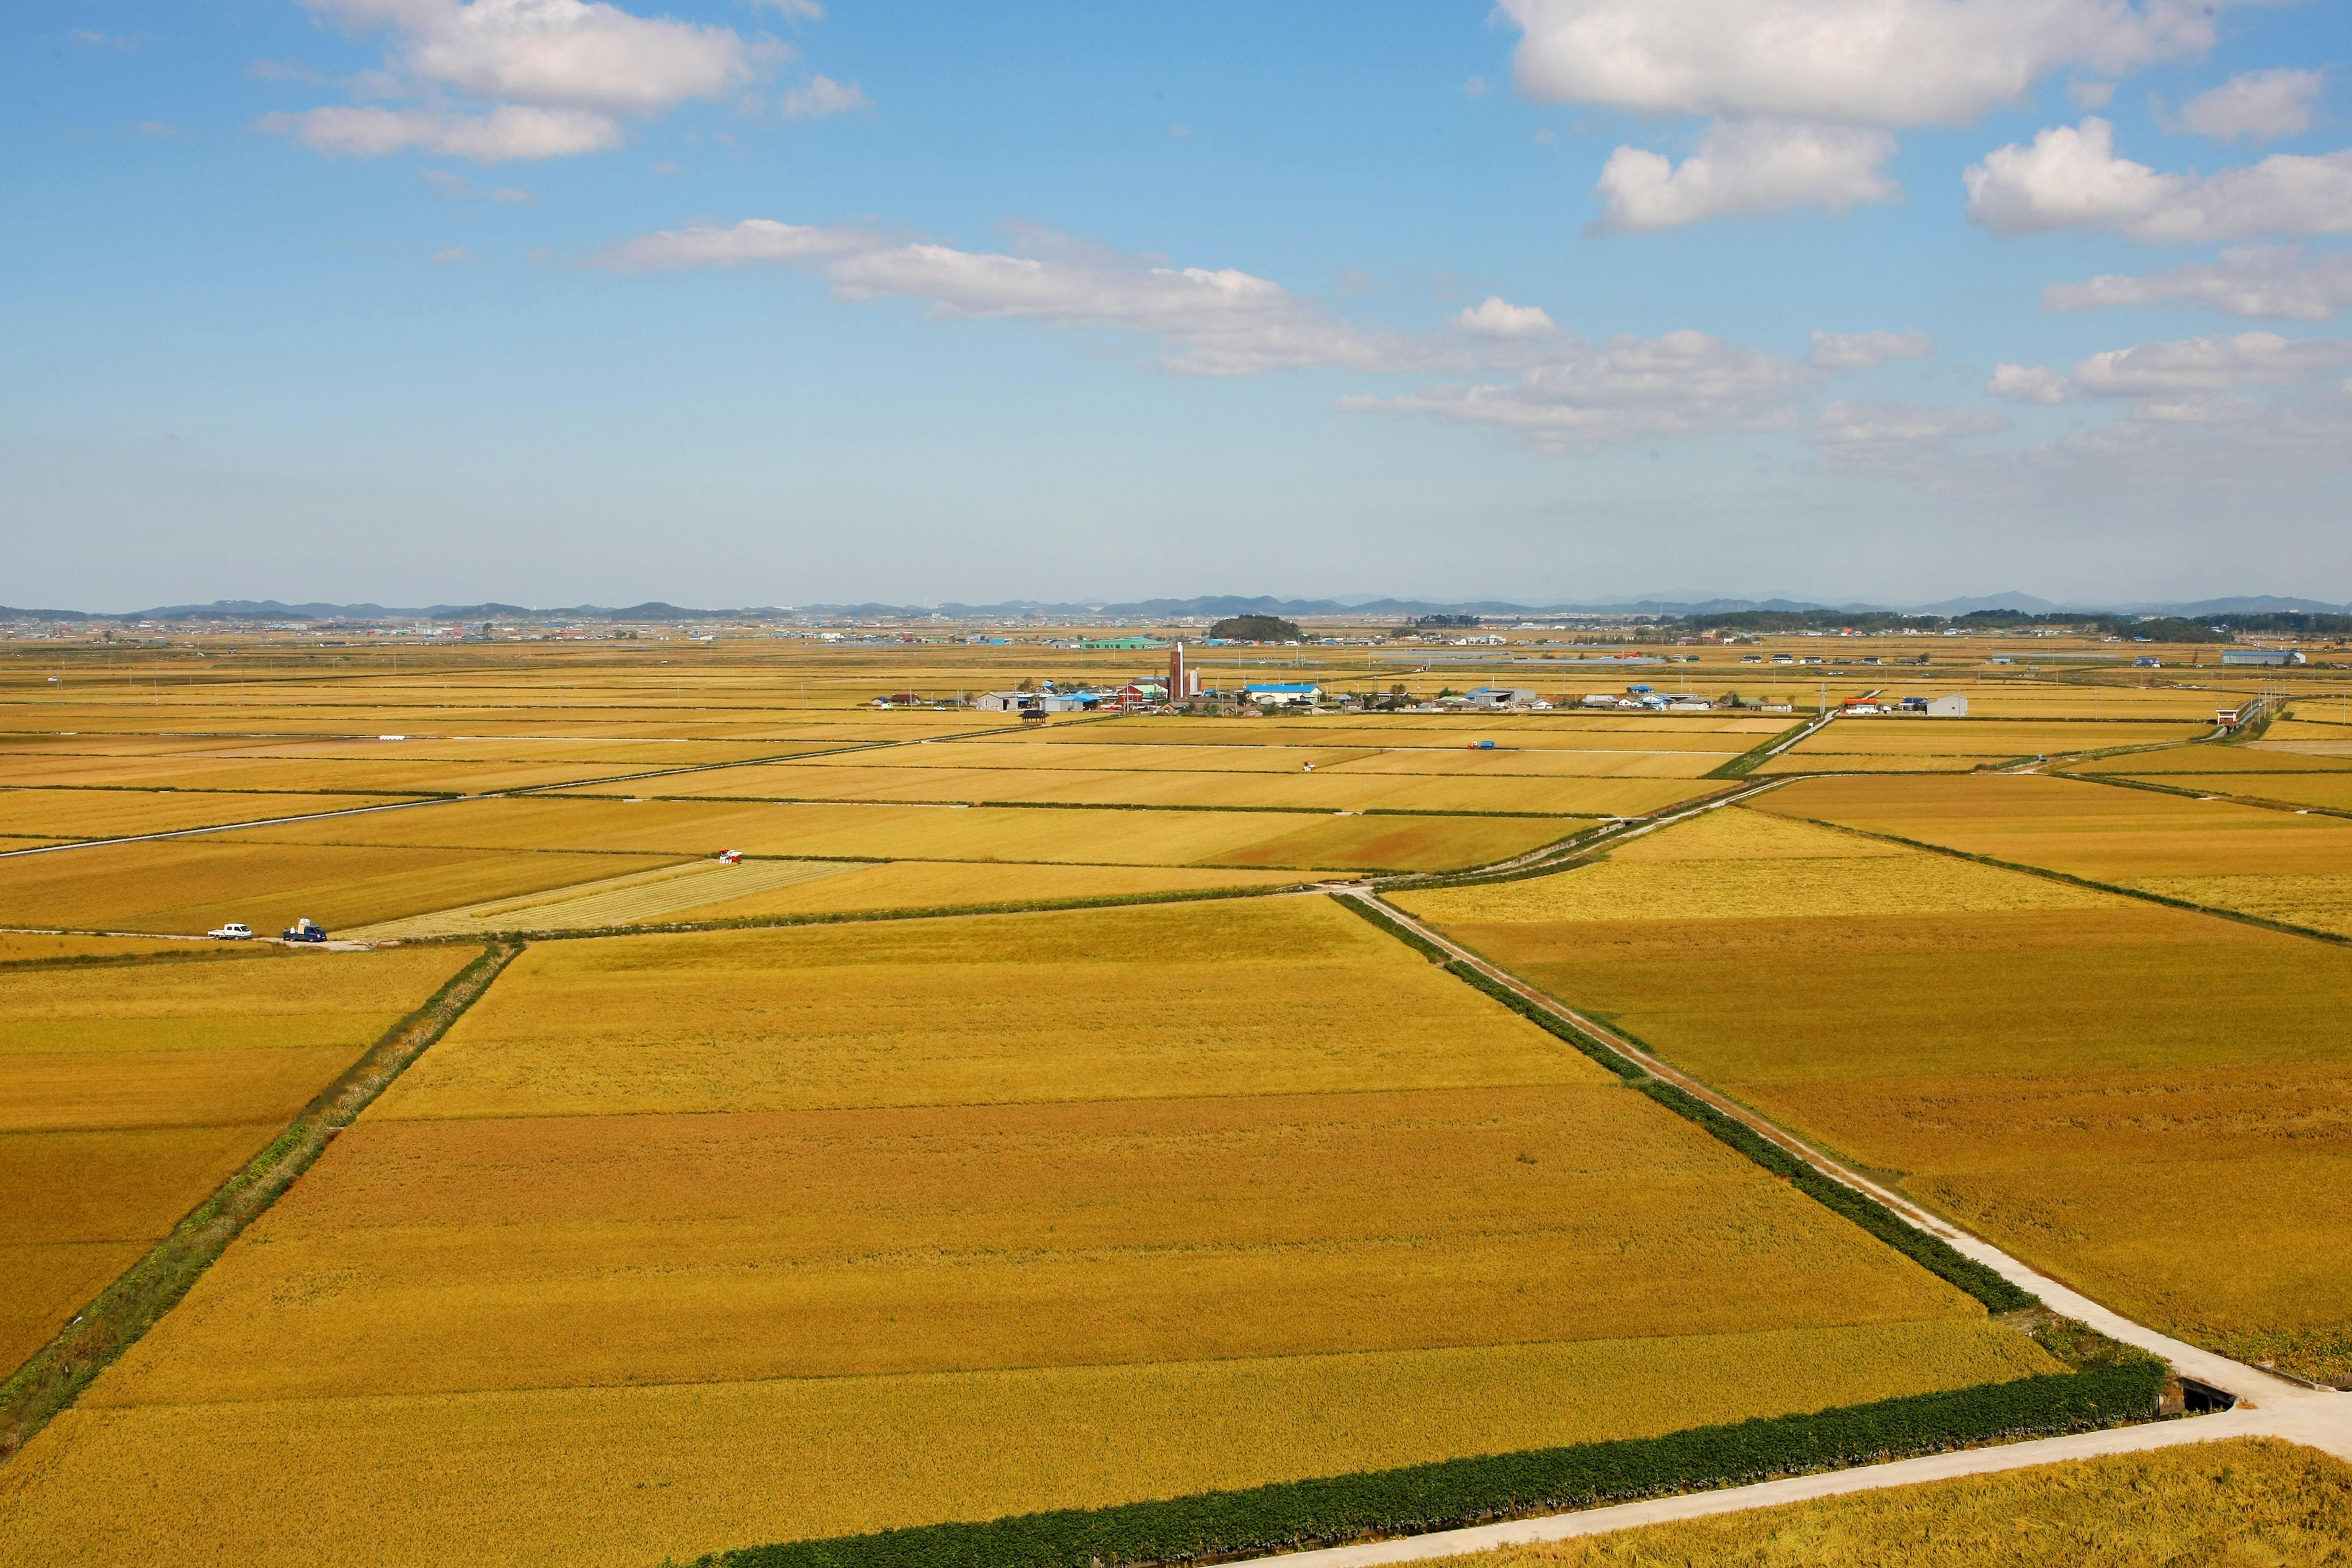 풍년농사가 예상되지만 쌀값이 45년만에 최대 폭으로 하락해 농심이 타들어가고 있다.